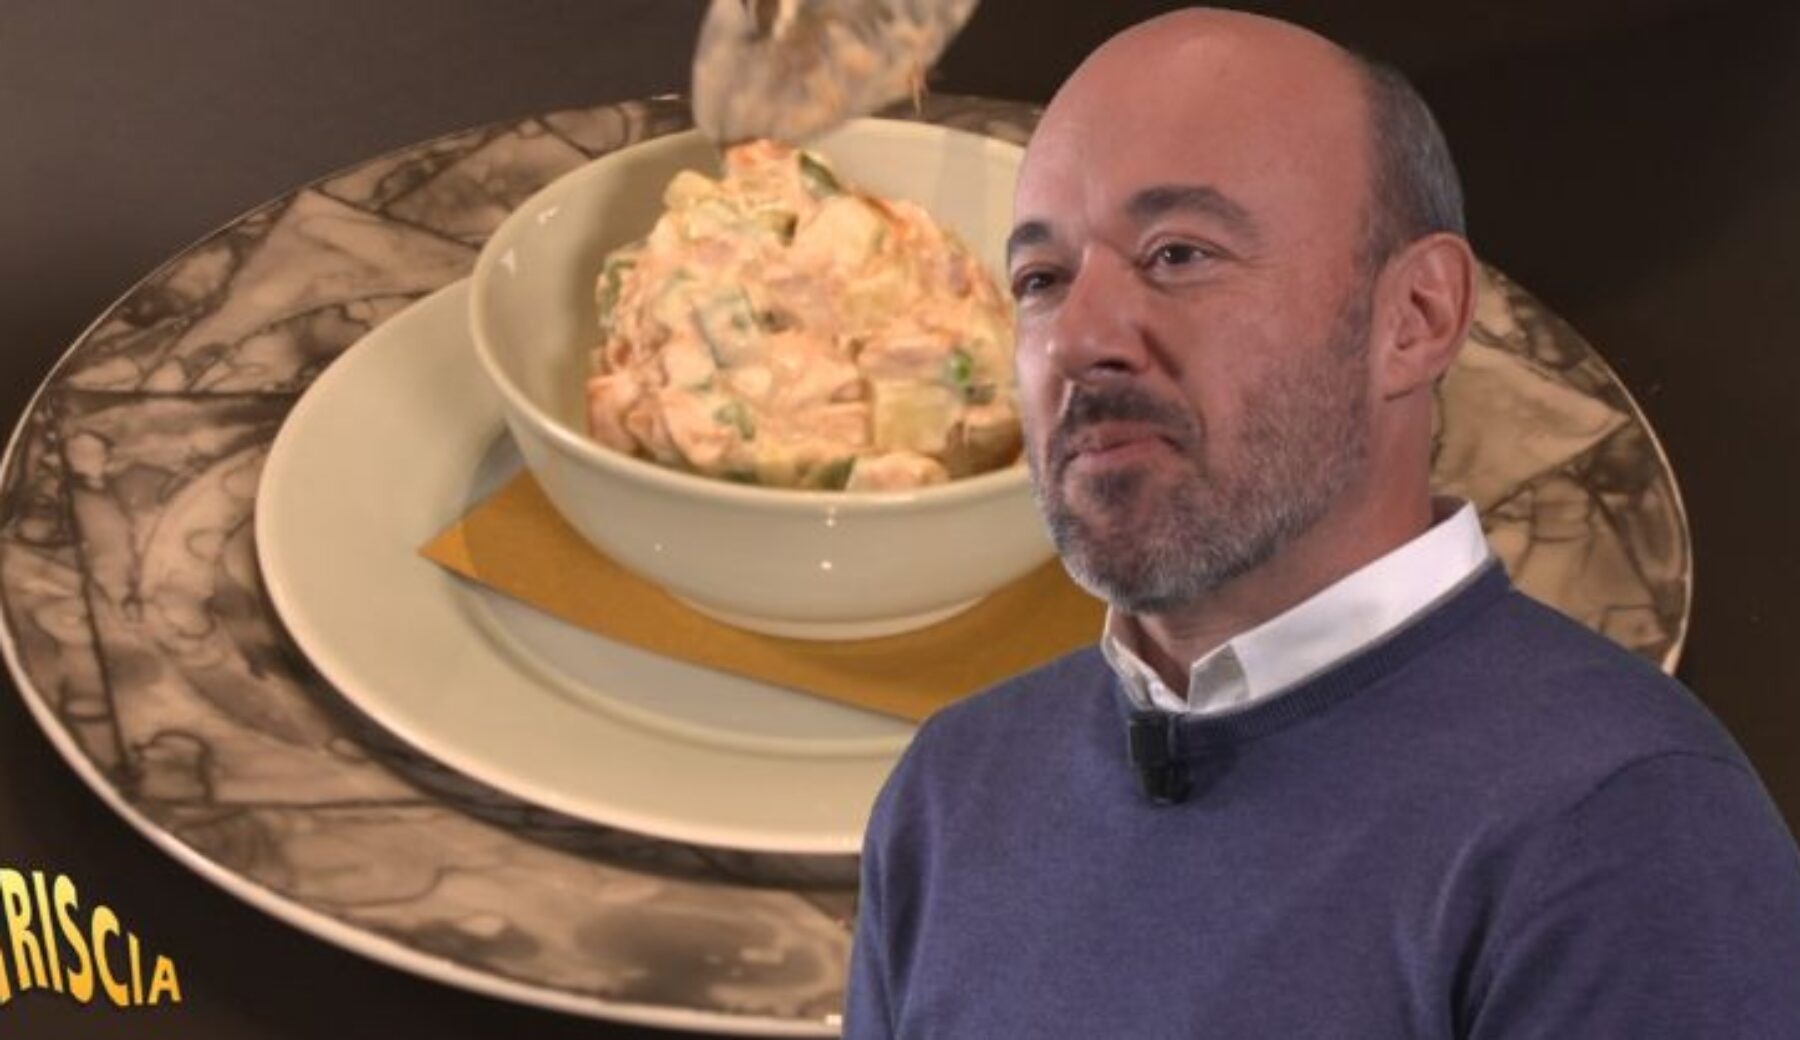 Domani sera a Striscia la notizia: l’insalata russa di Dennis Panzeri e Federico Ceretto